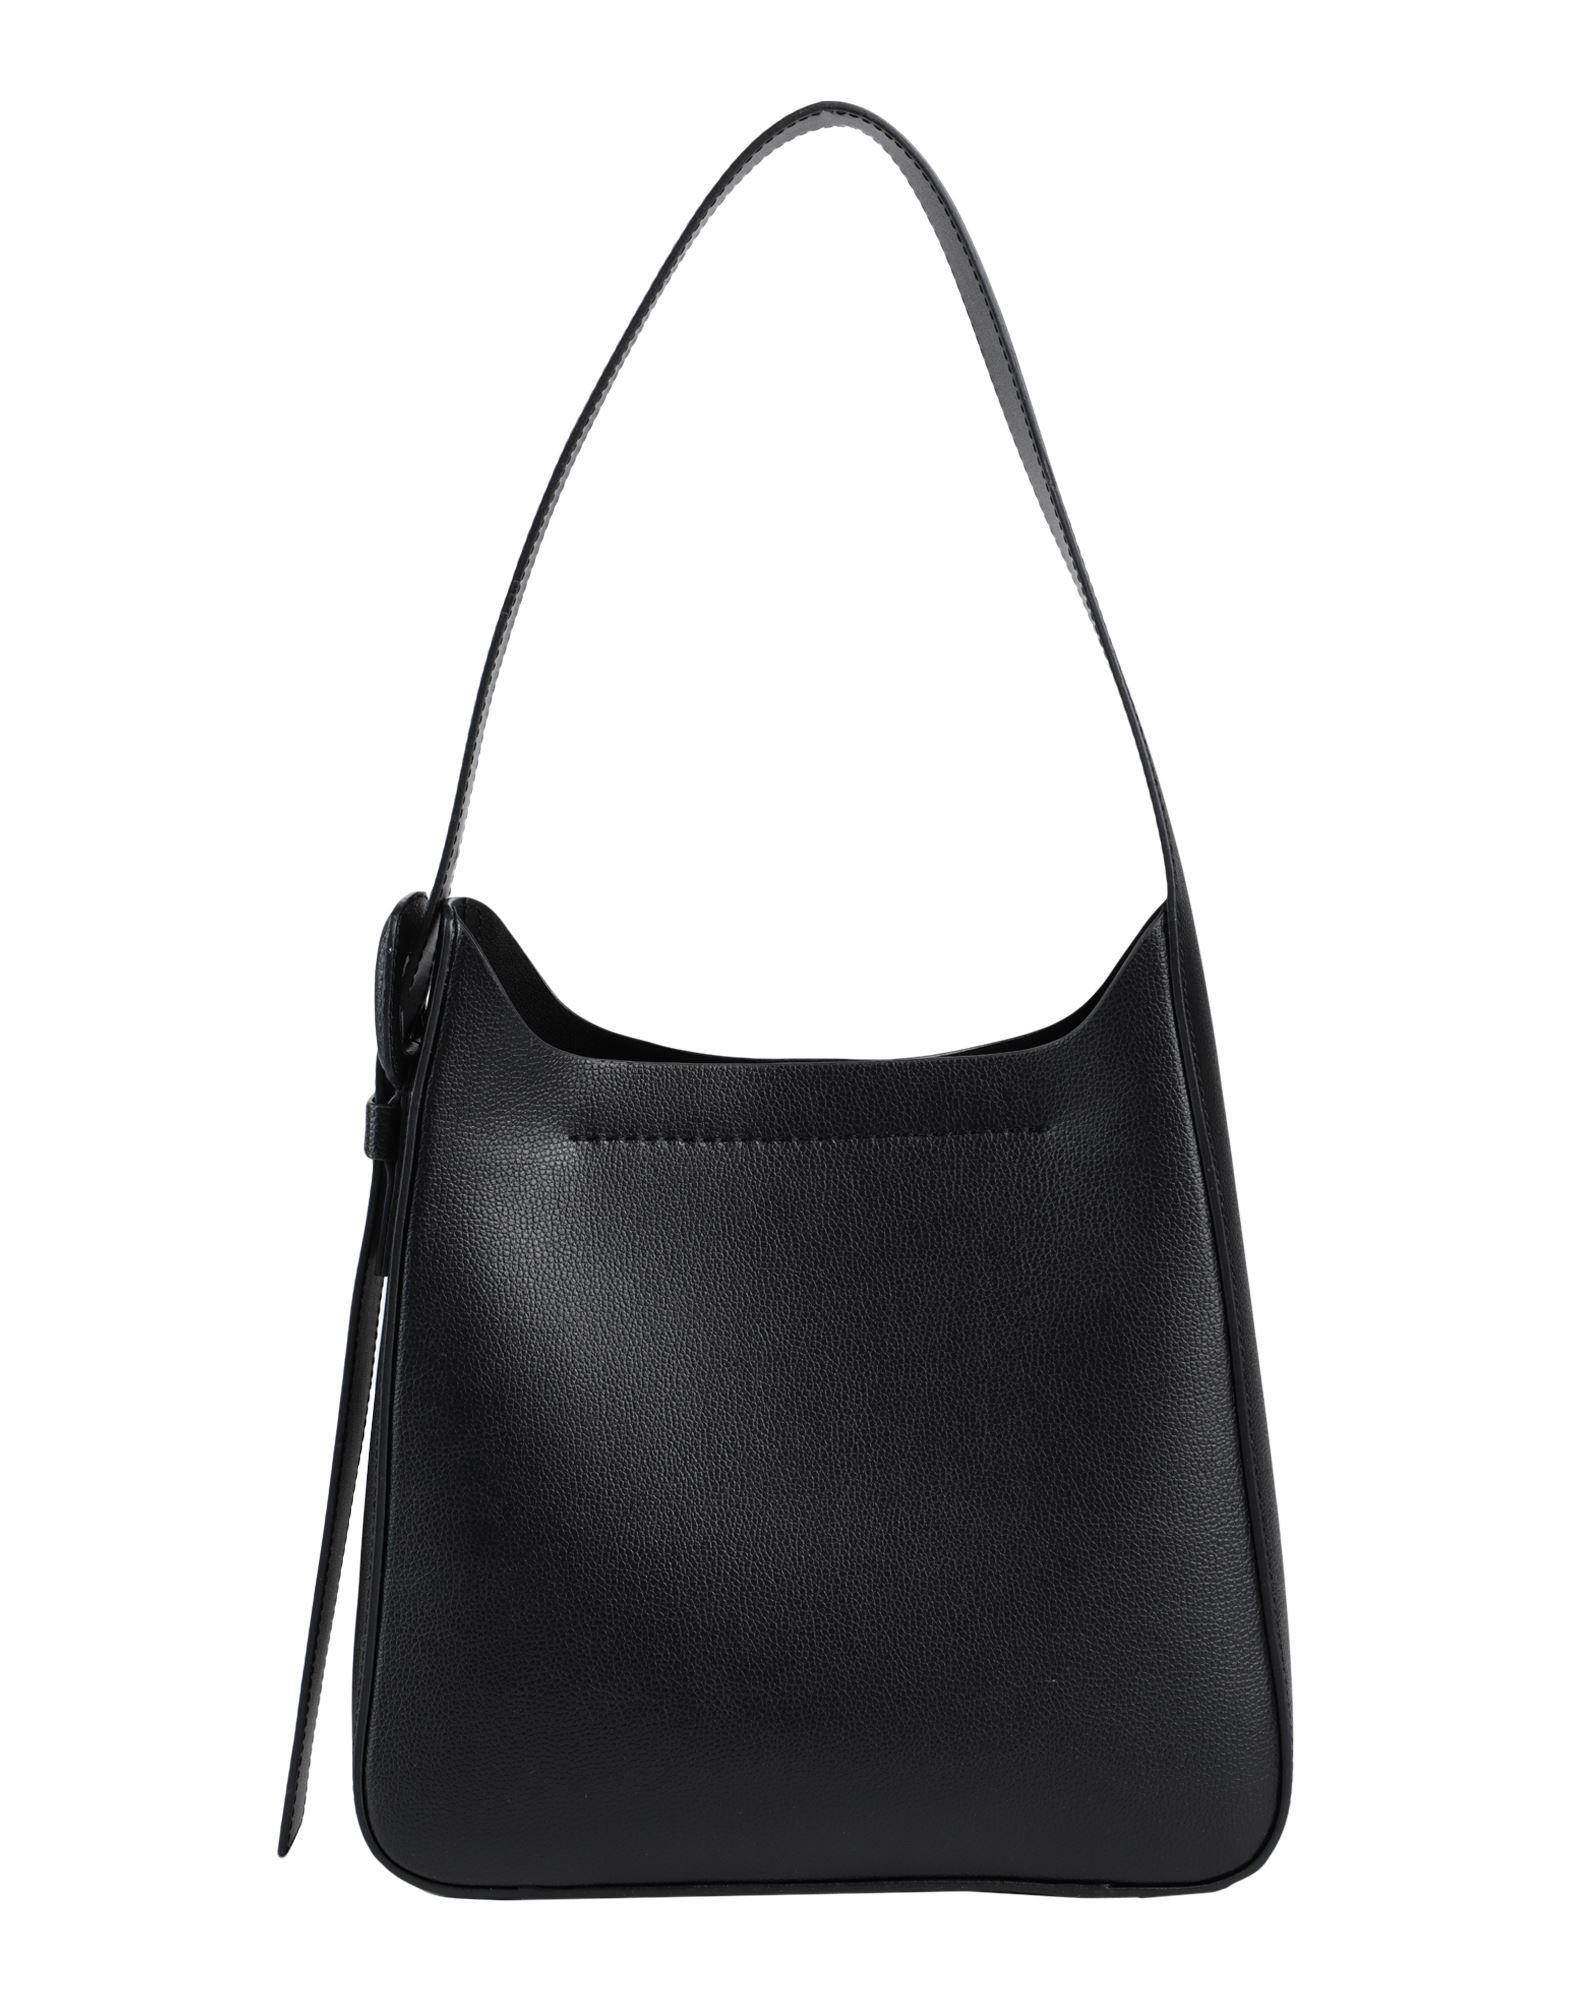 ARKET Leather Shoulder Bag in Black | Lyst